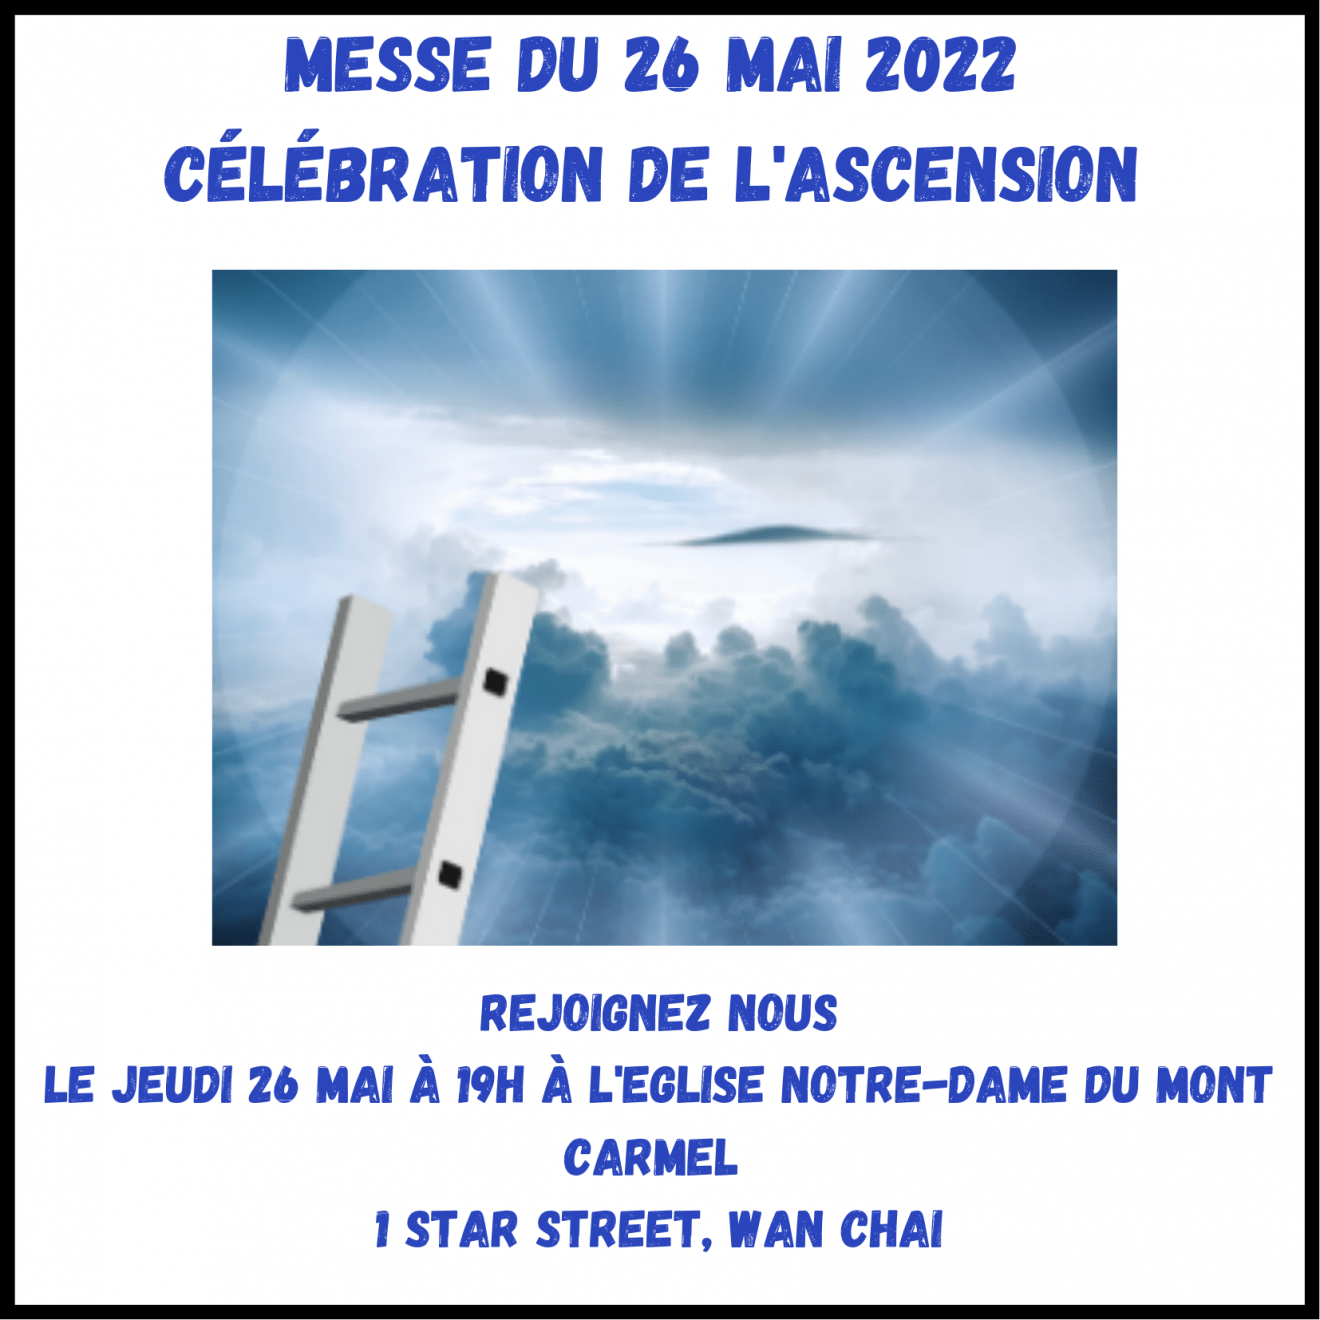 Messe de L'ascension le 26 mai 2022